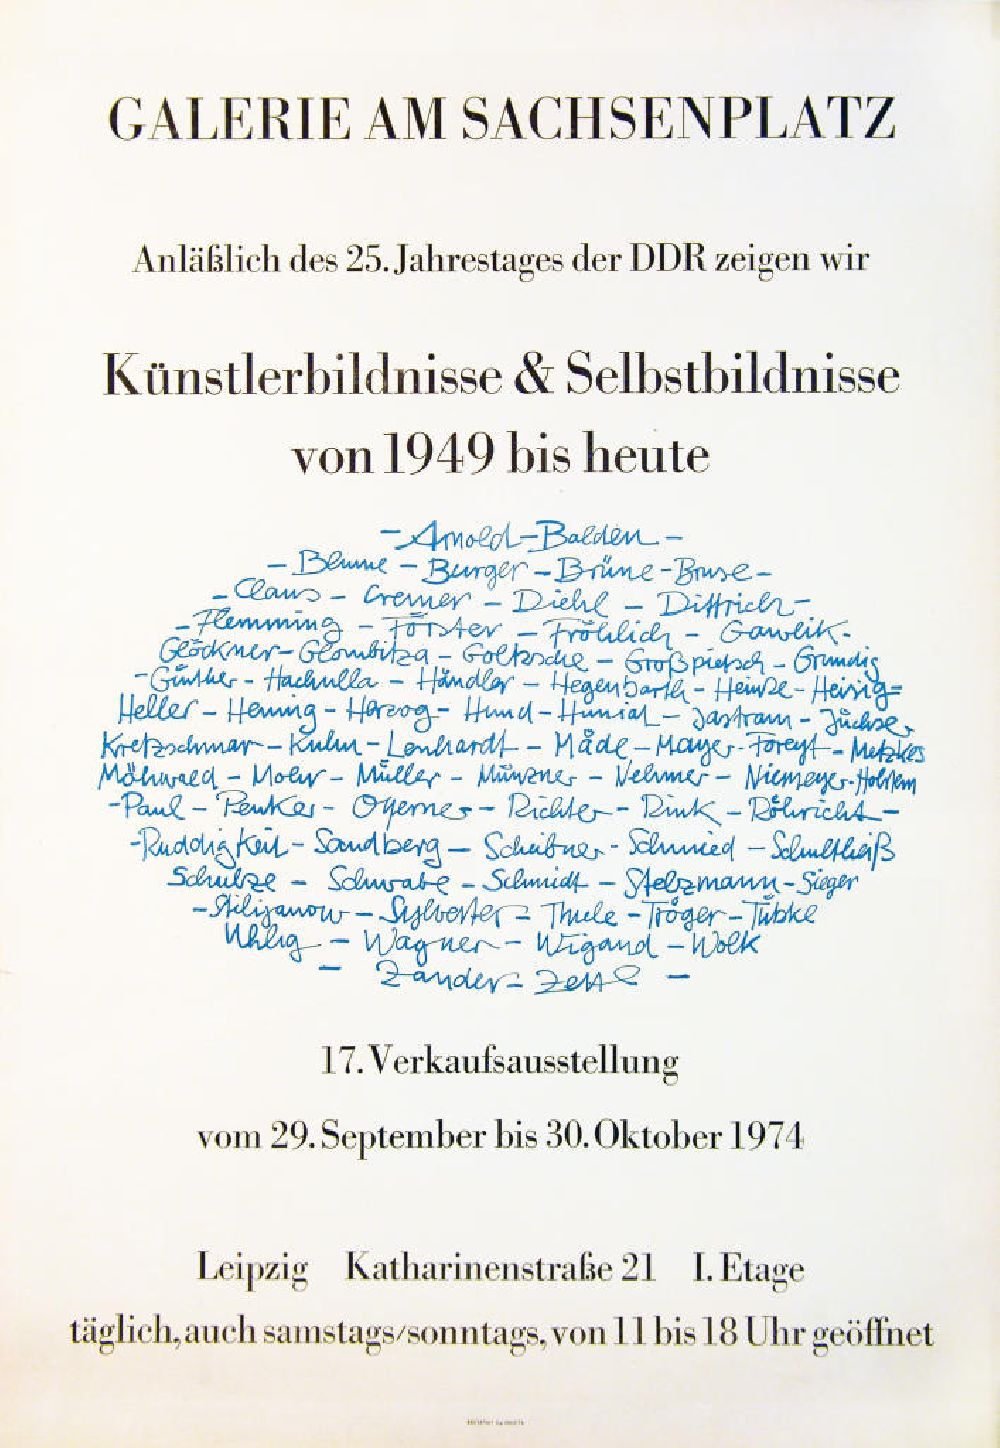 DDR-Fotoarchiv: Berlin - Plakat von der Ausstellung Künstlerbildnisse und Selbstbildnisse von 49 bis heute über Herbert Sandberg aus dem Jahr 1974